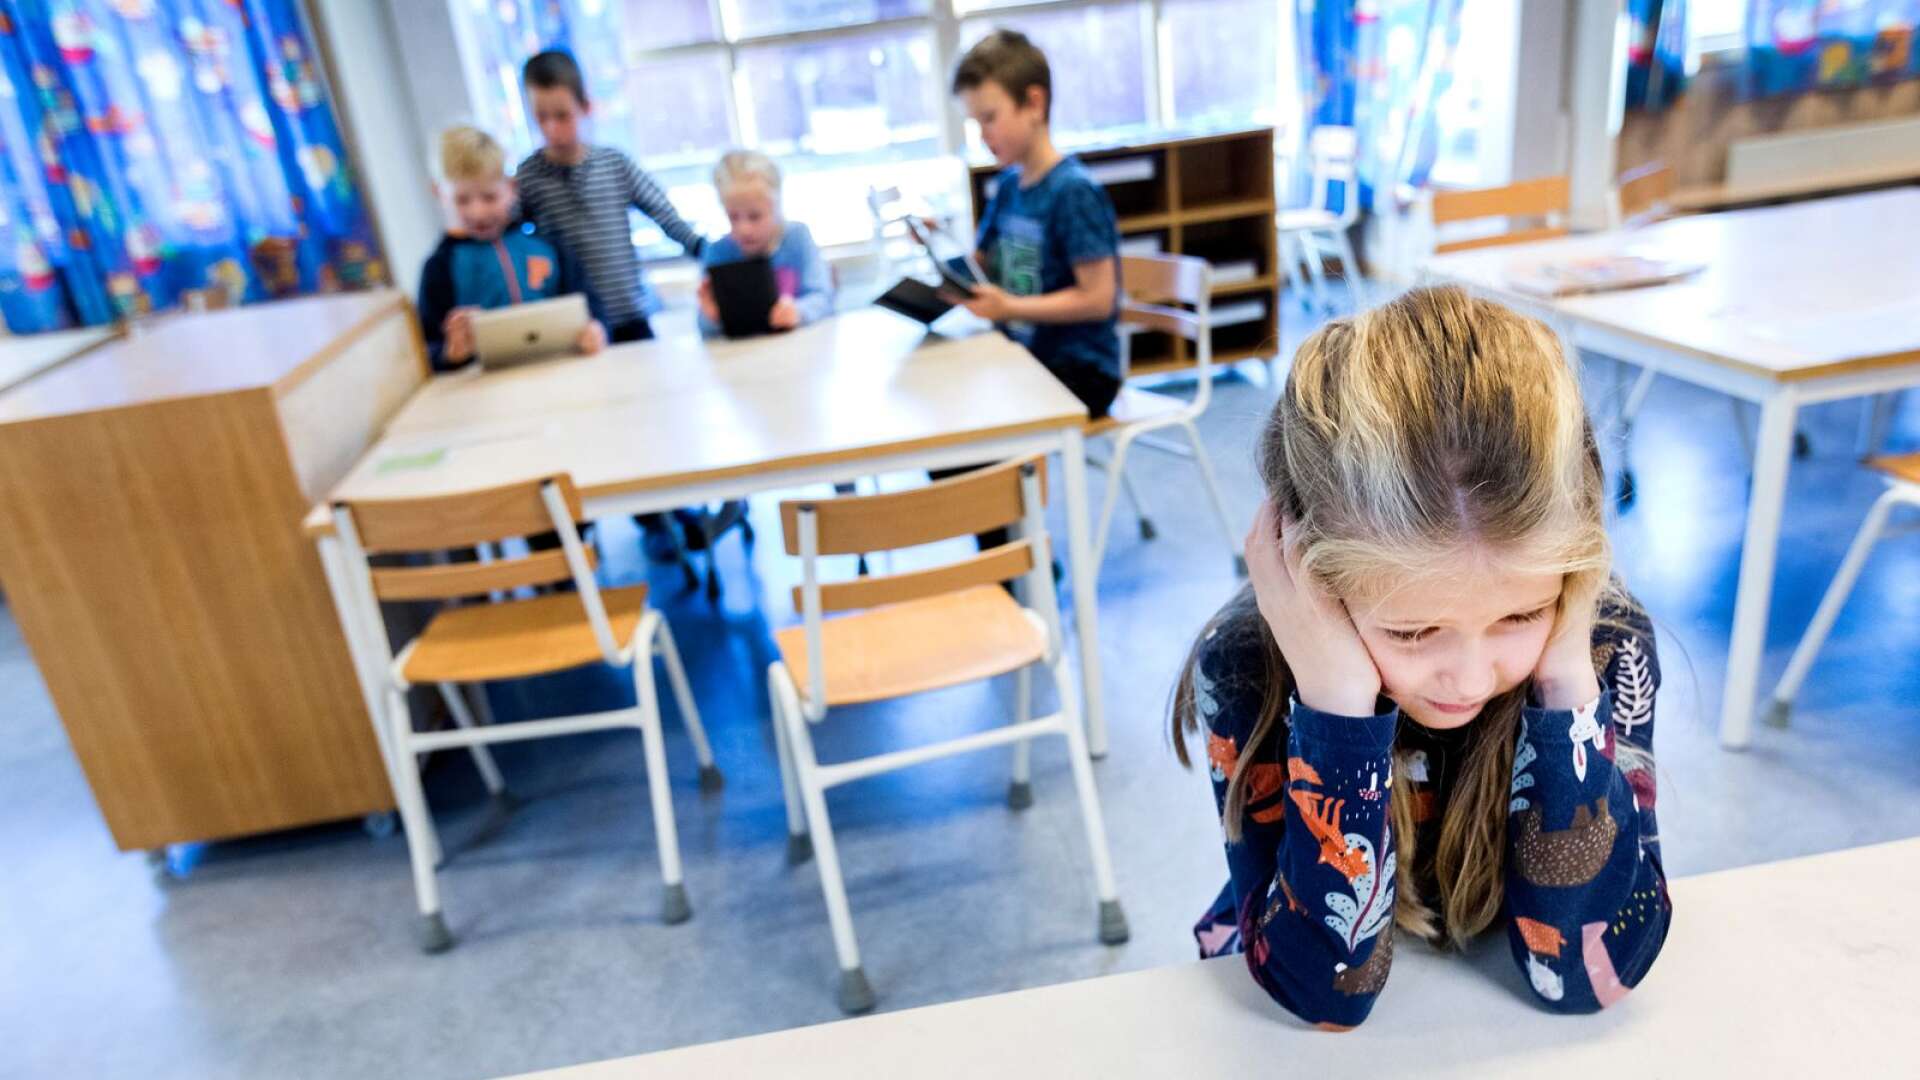 I klassrummet ska fokus vara på undervisningen, och eleverna ska ha goda förutsättningar att koncentrera sig, skriver Anna Ekström och Anna Dahlén Gauffin.